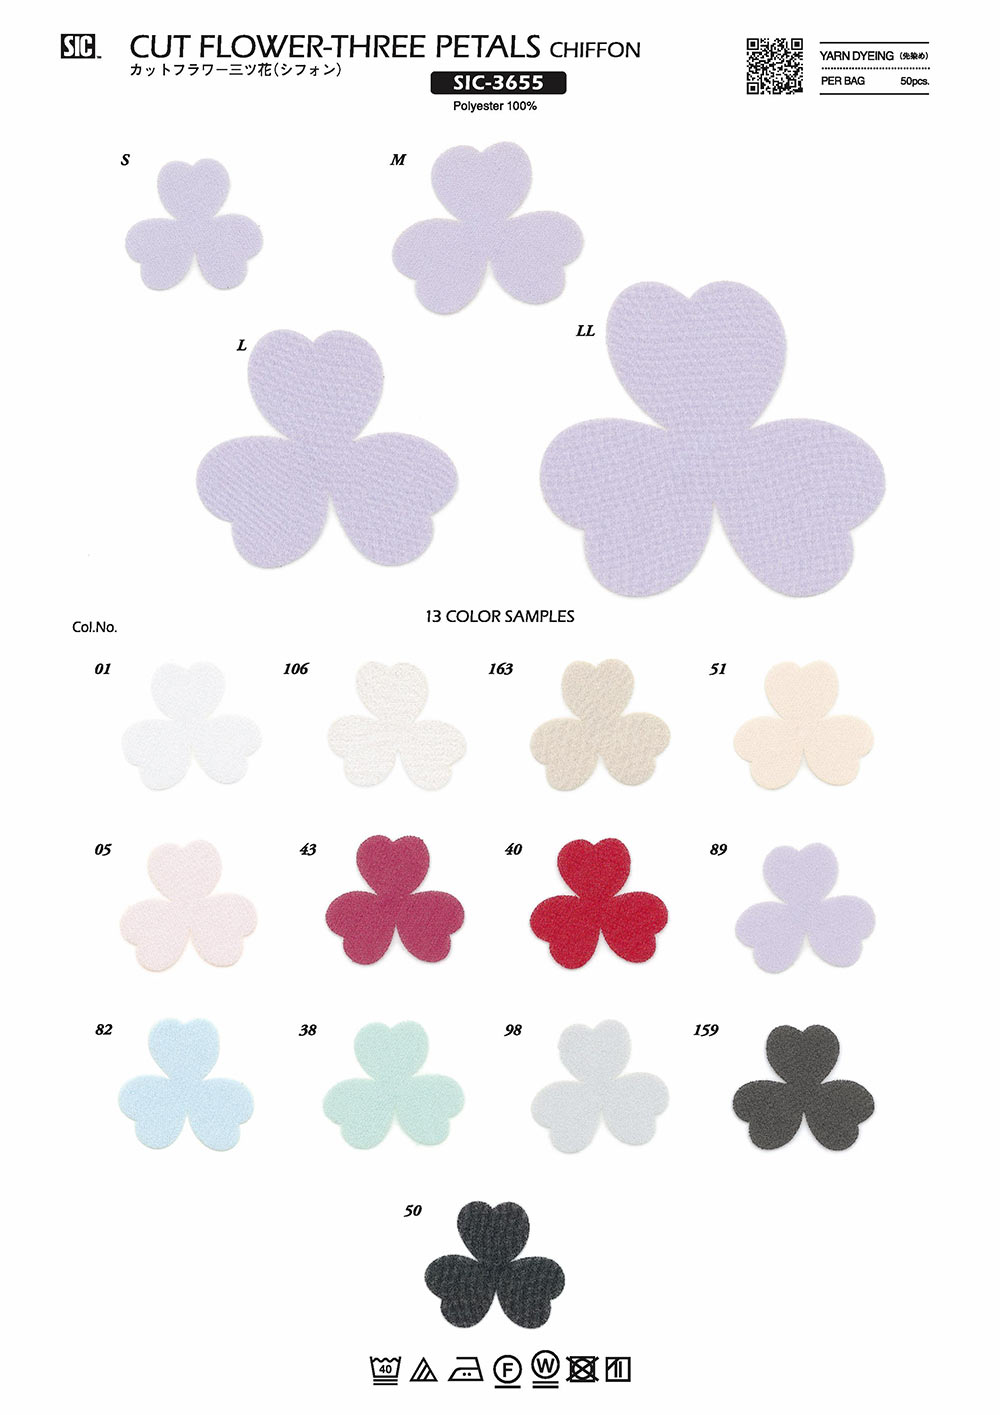 SIC-3655 Fleur Coupée Mitsuhana (Mousseline De Soie)[Marchandises Diverses Et Autres] SHINDO(SIC)